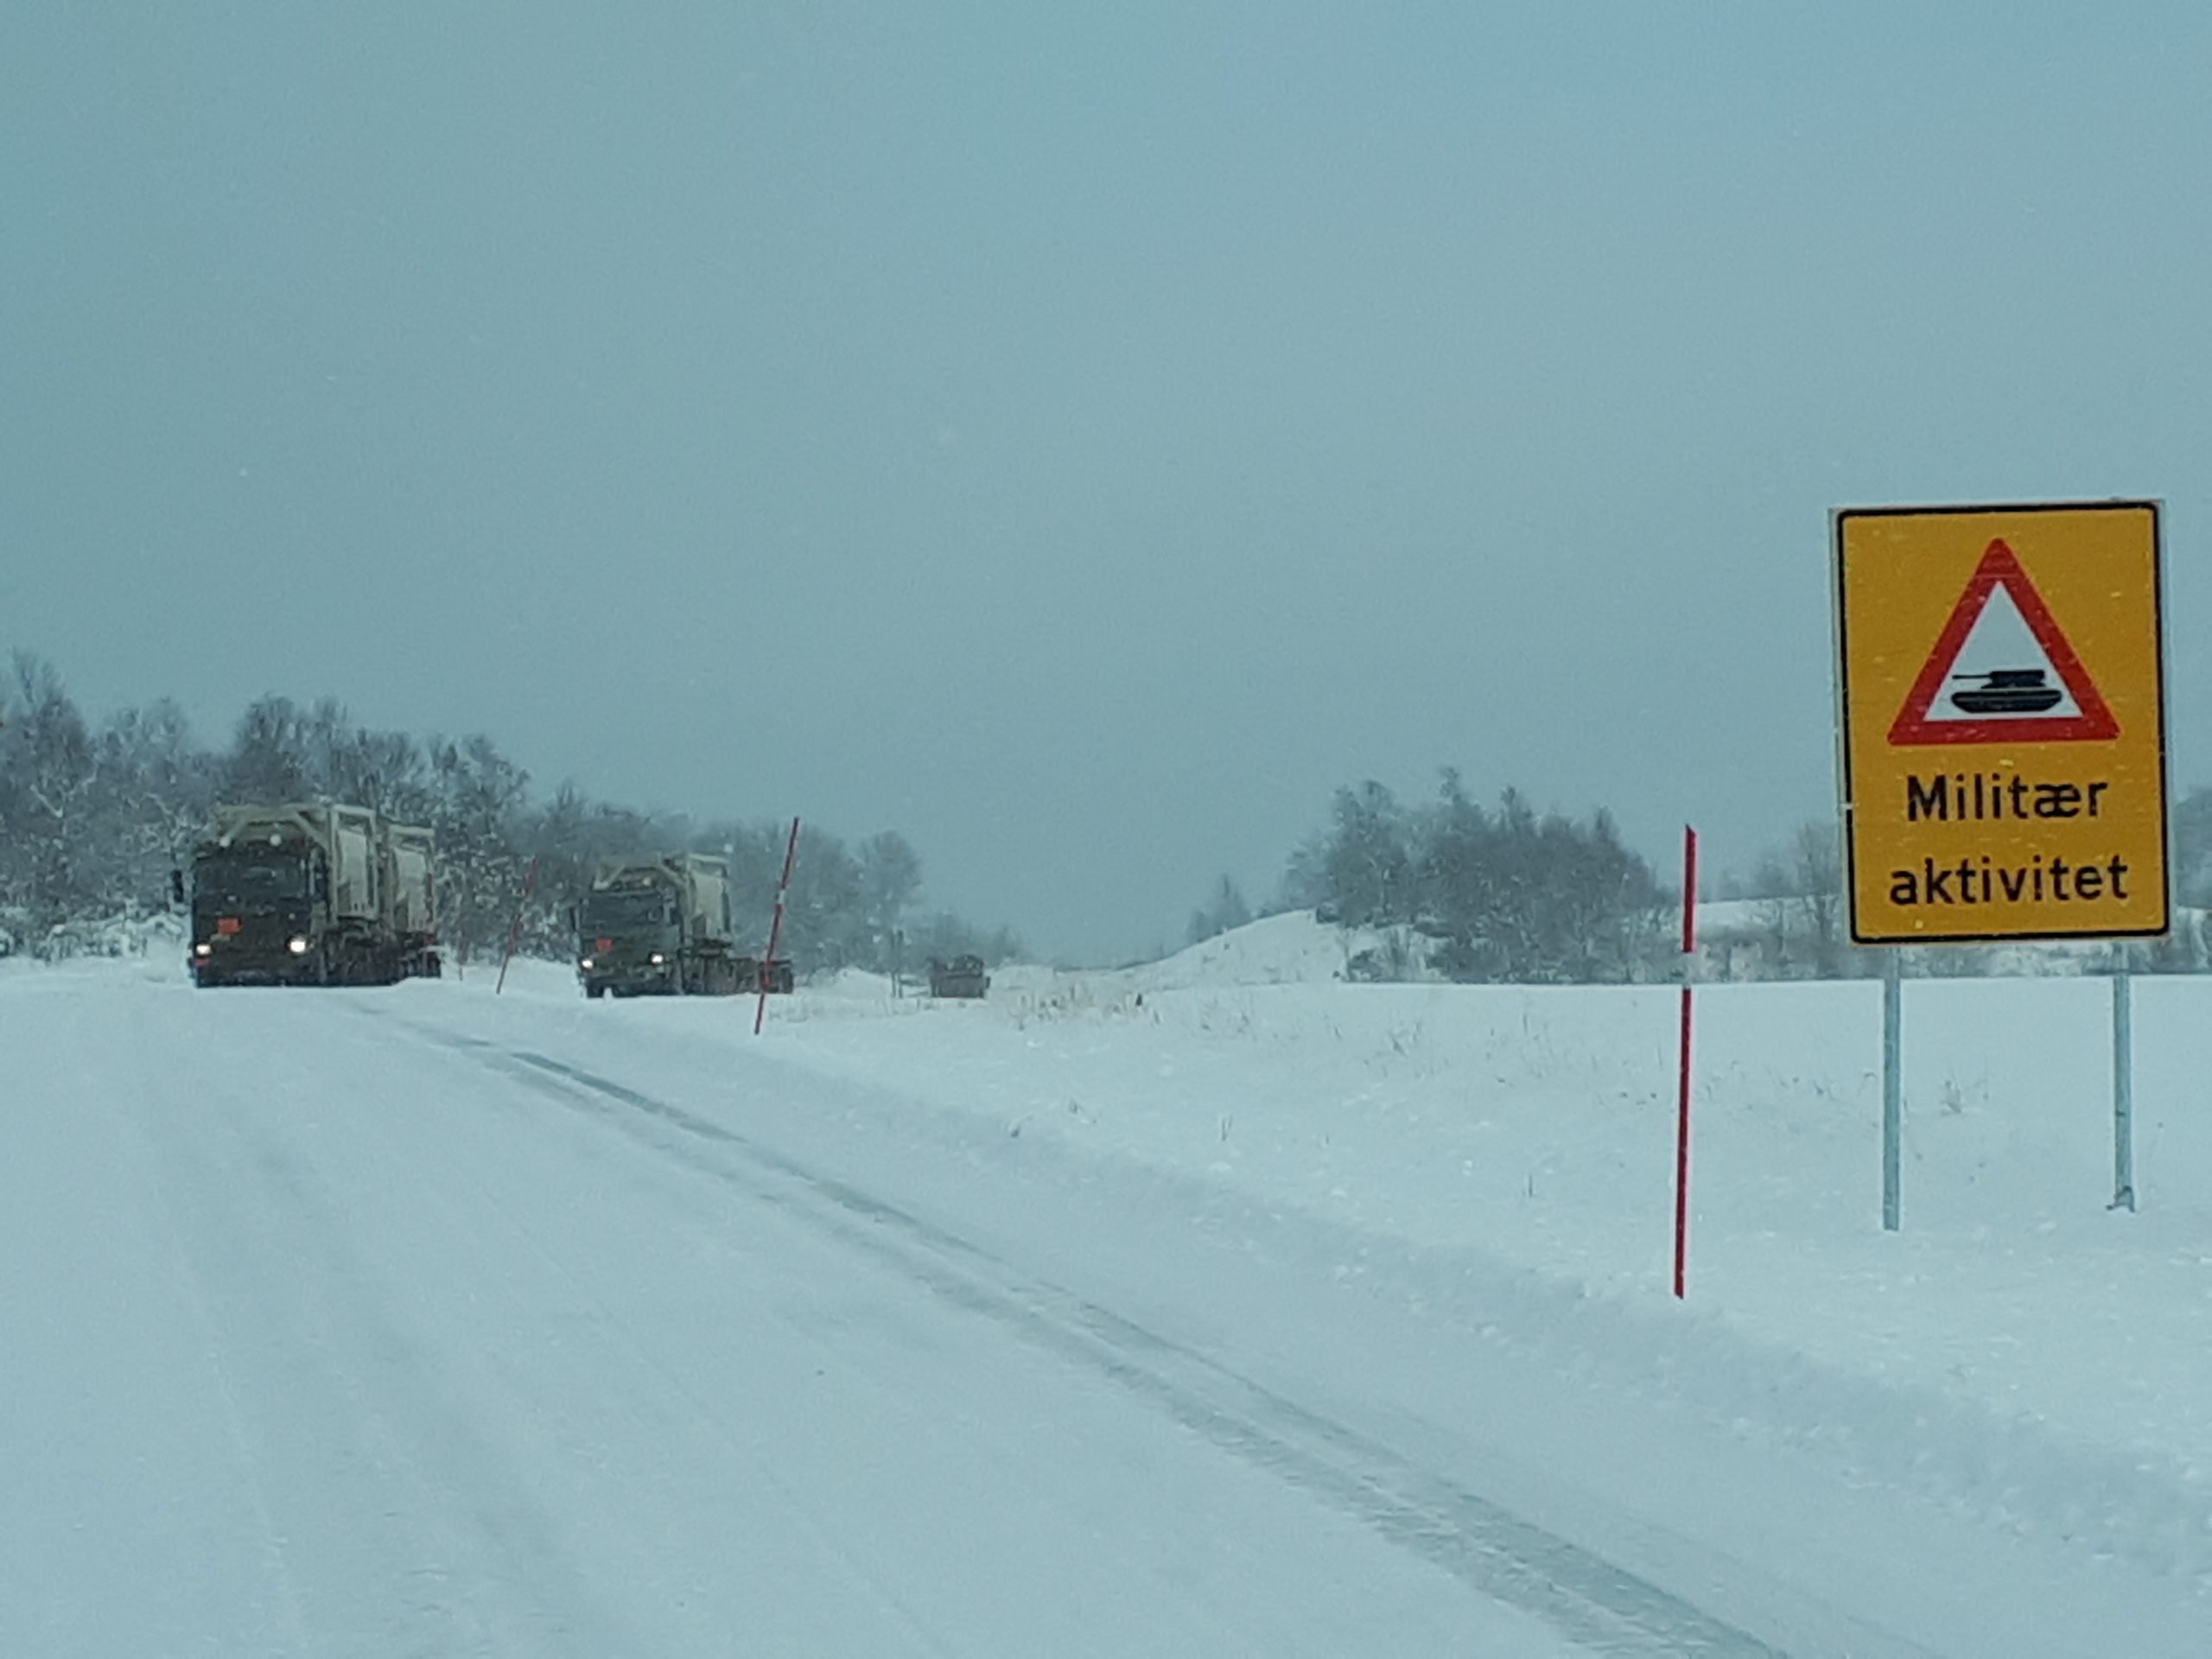 Snø på bakken, et skilt hvor det står "Militær aktivitet". To militære kjøretøy sees i bakgrunnen